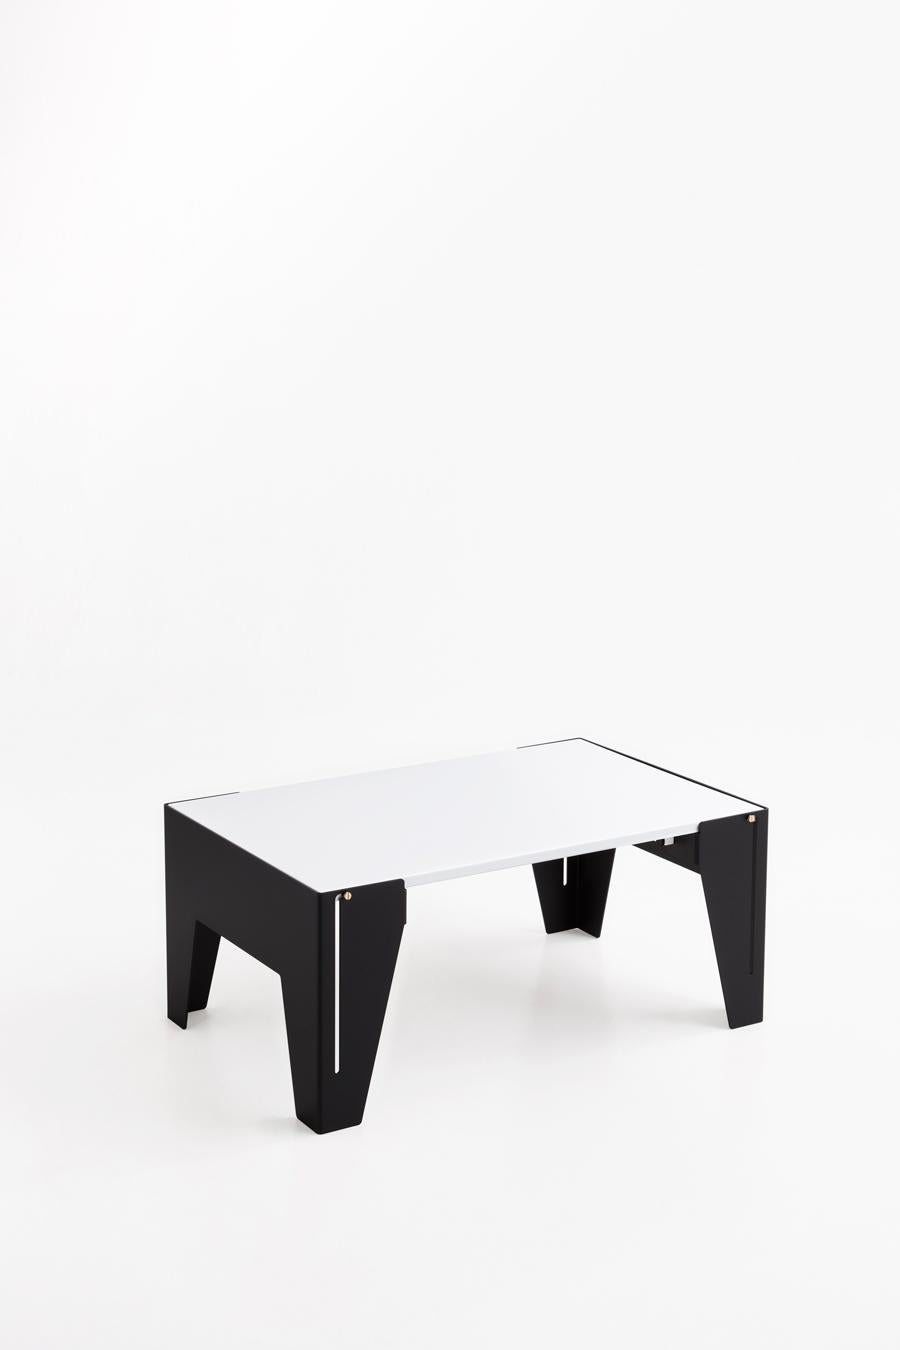 Aluminum Adolfo Abejon Contemporary Design 'Falcon' Side Table